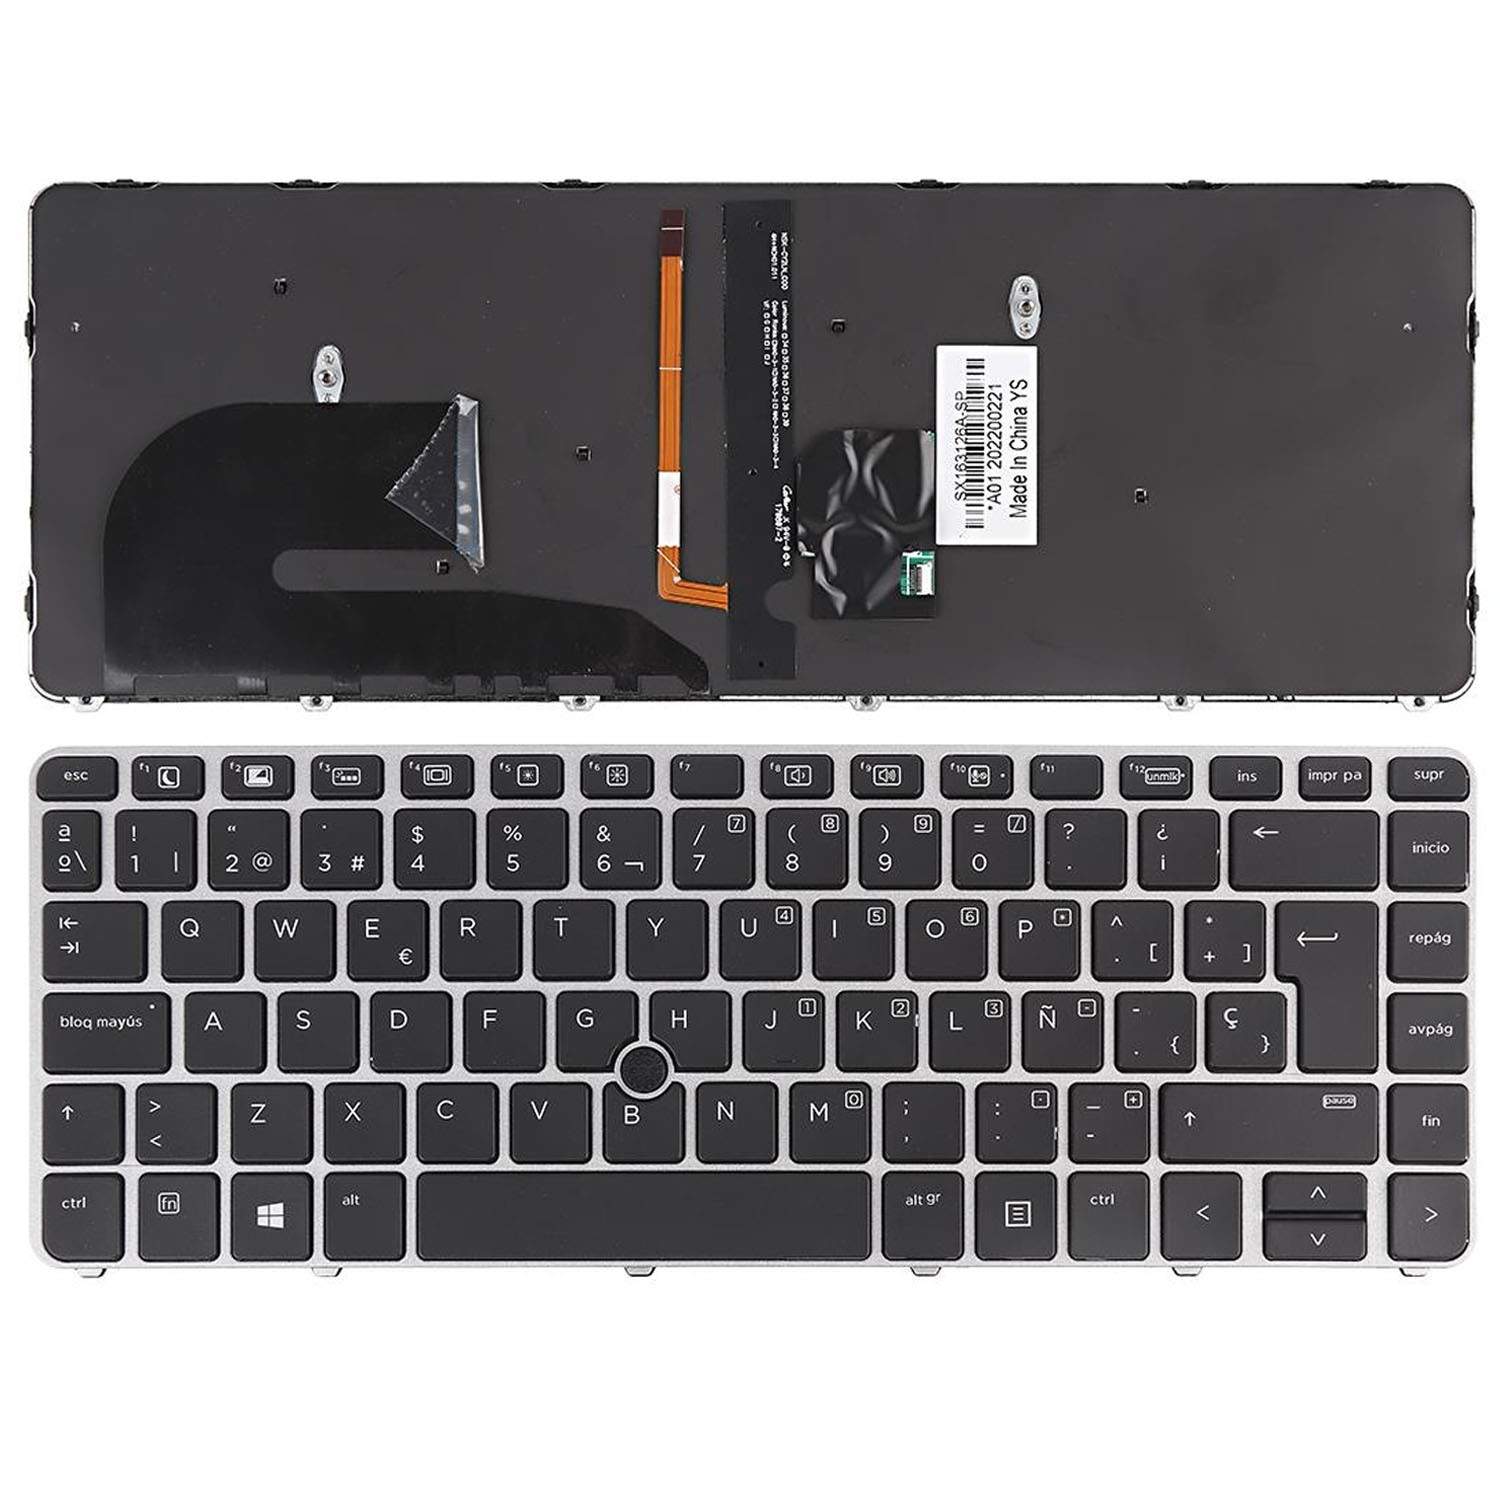 teclado para 840 g3